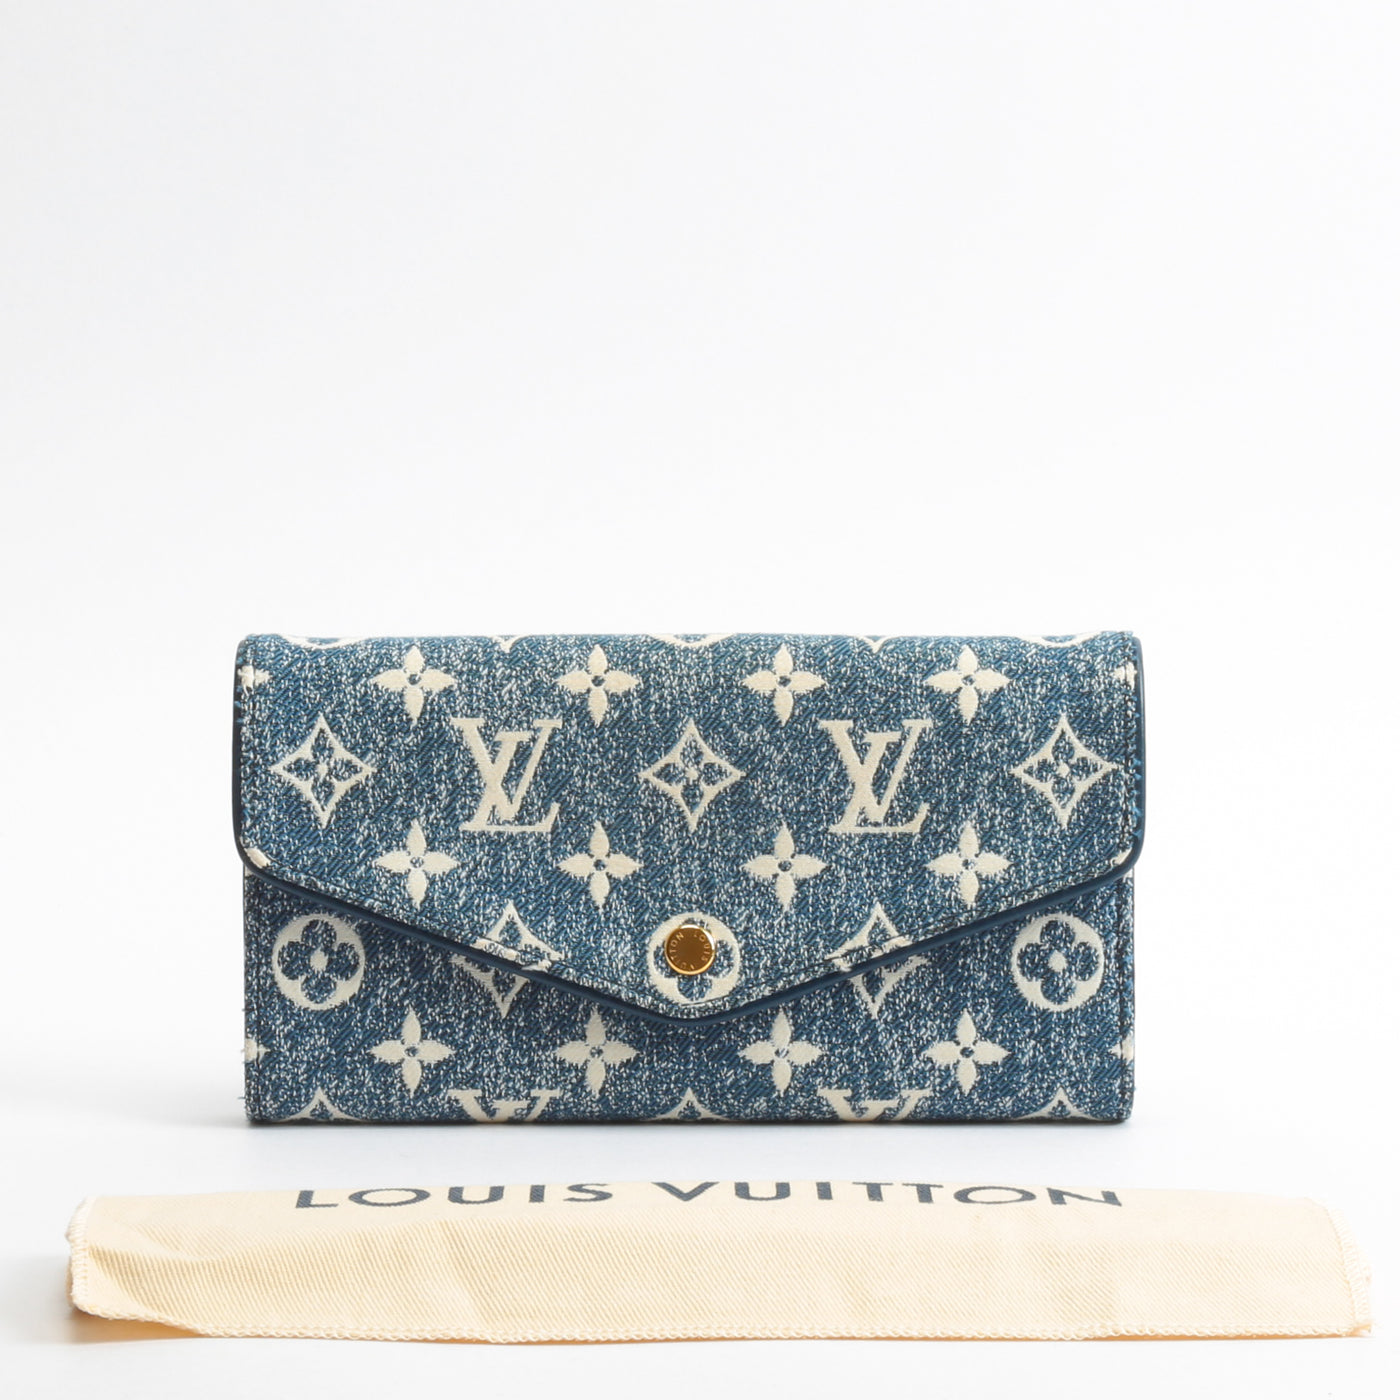 Louis Vuitton releases Monogram Jacquard Denim